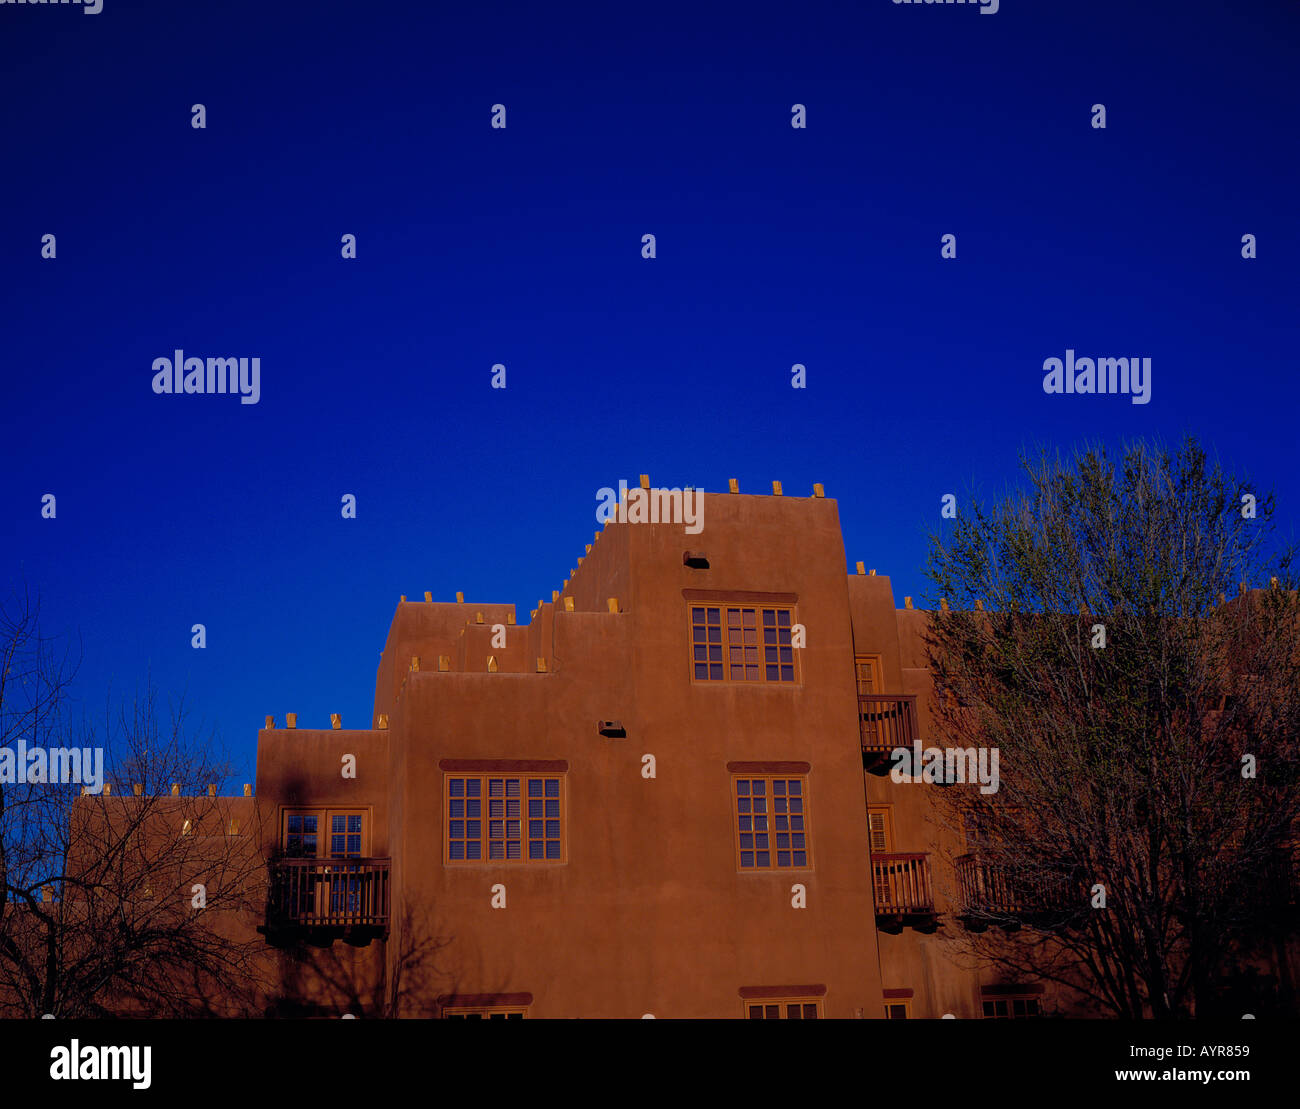 Adobe Walls Loretto Santa Fe New Mexico USA. Photo by Willy Matheisl Stock Photo